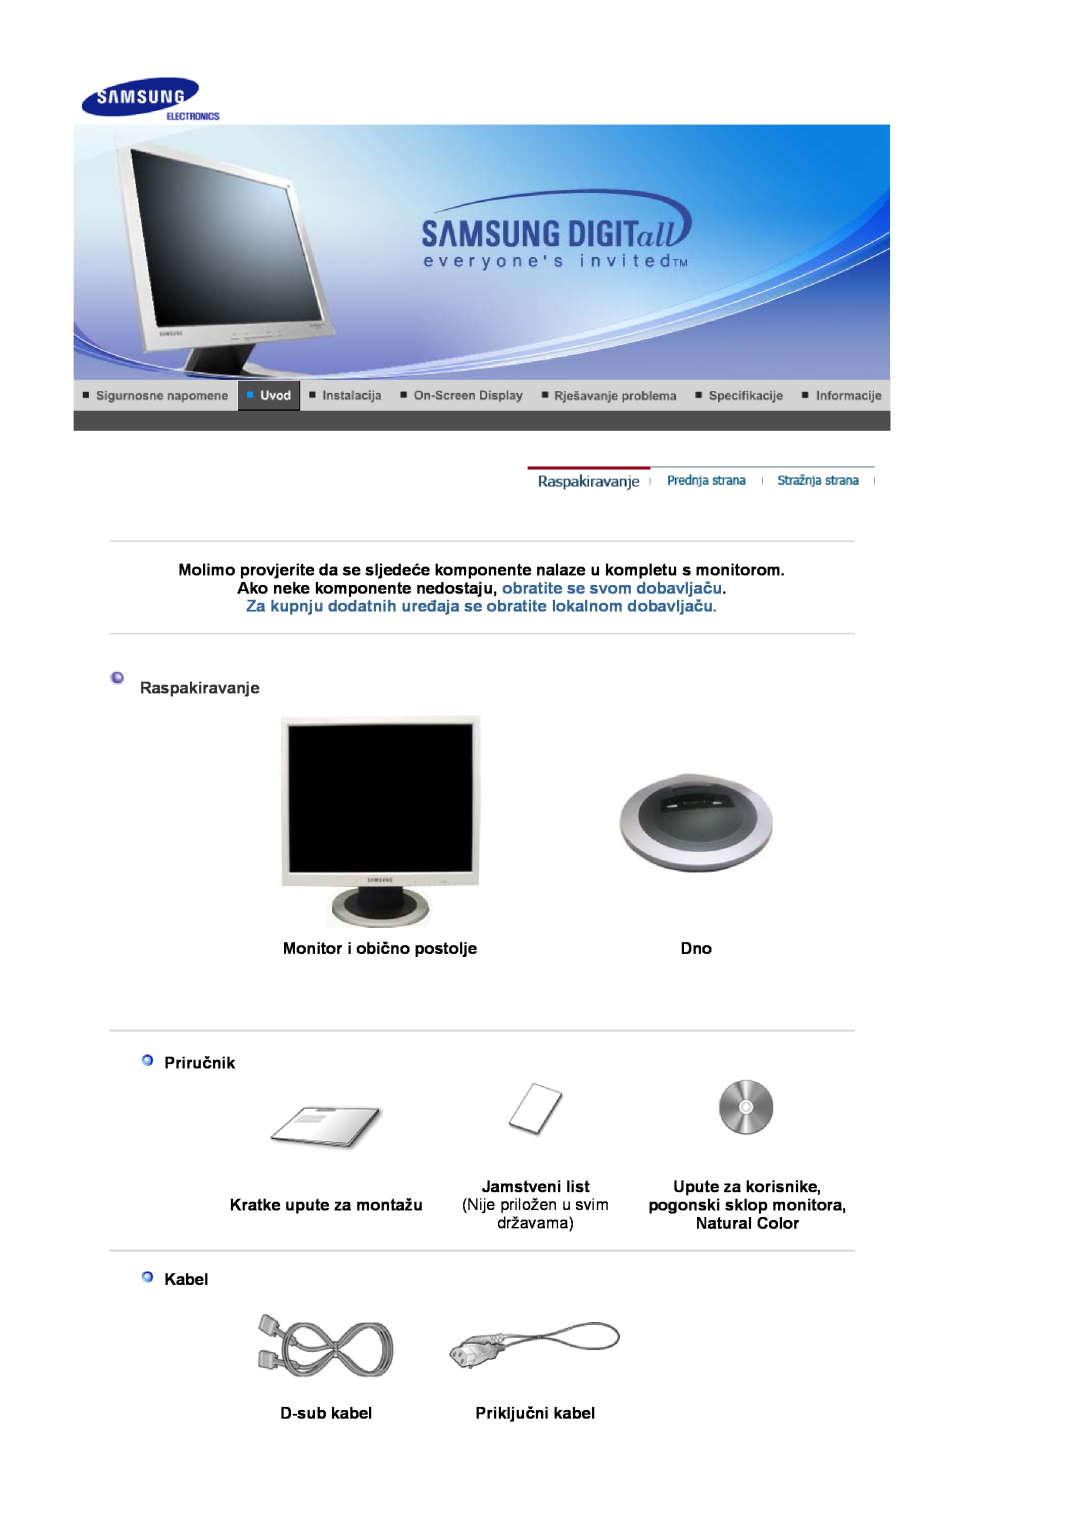 Samsung LS17MJVKS/EDC Raspakiravanje, Monitor i obično postolje, Priručnik, Jamstveni list, Upute za korisnike, državama 